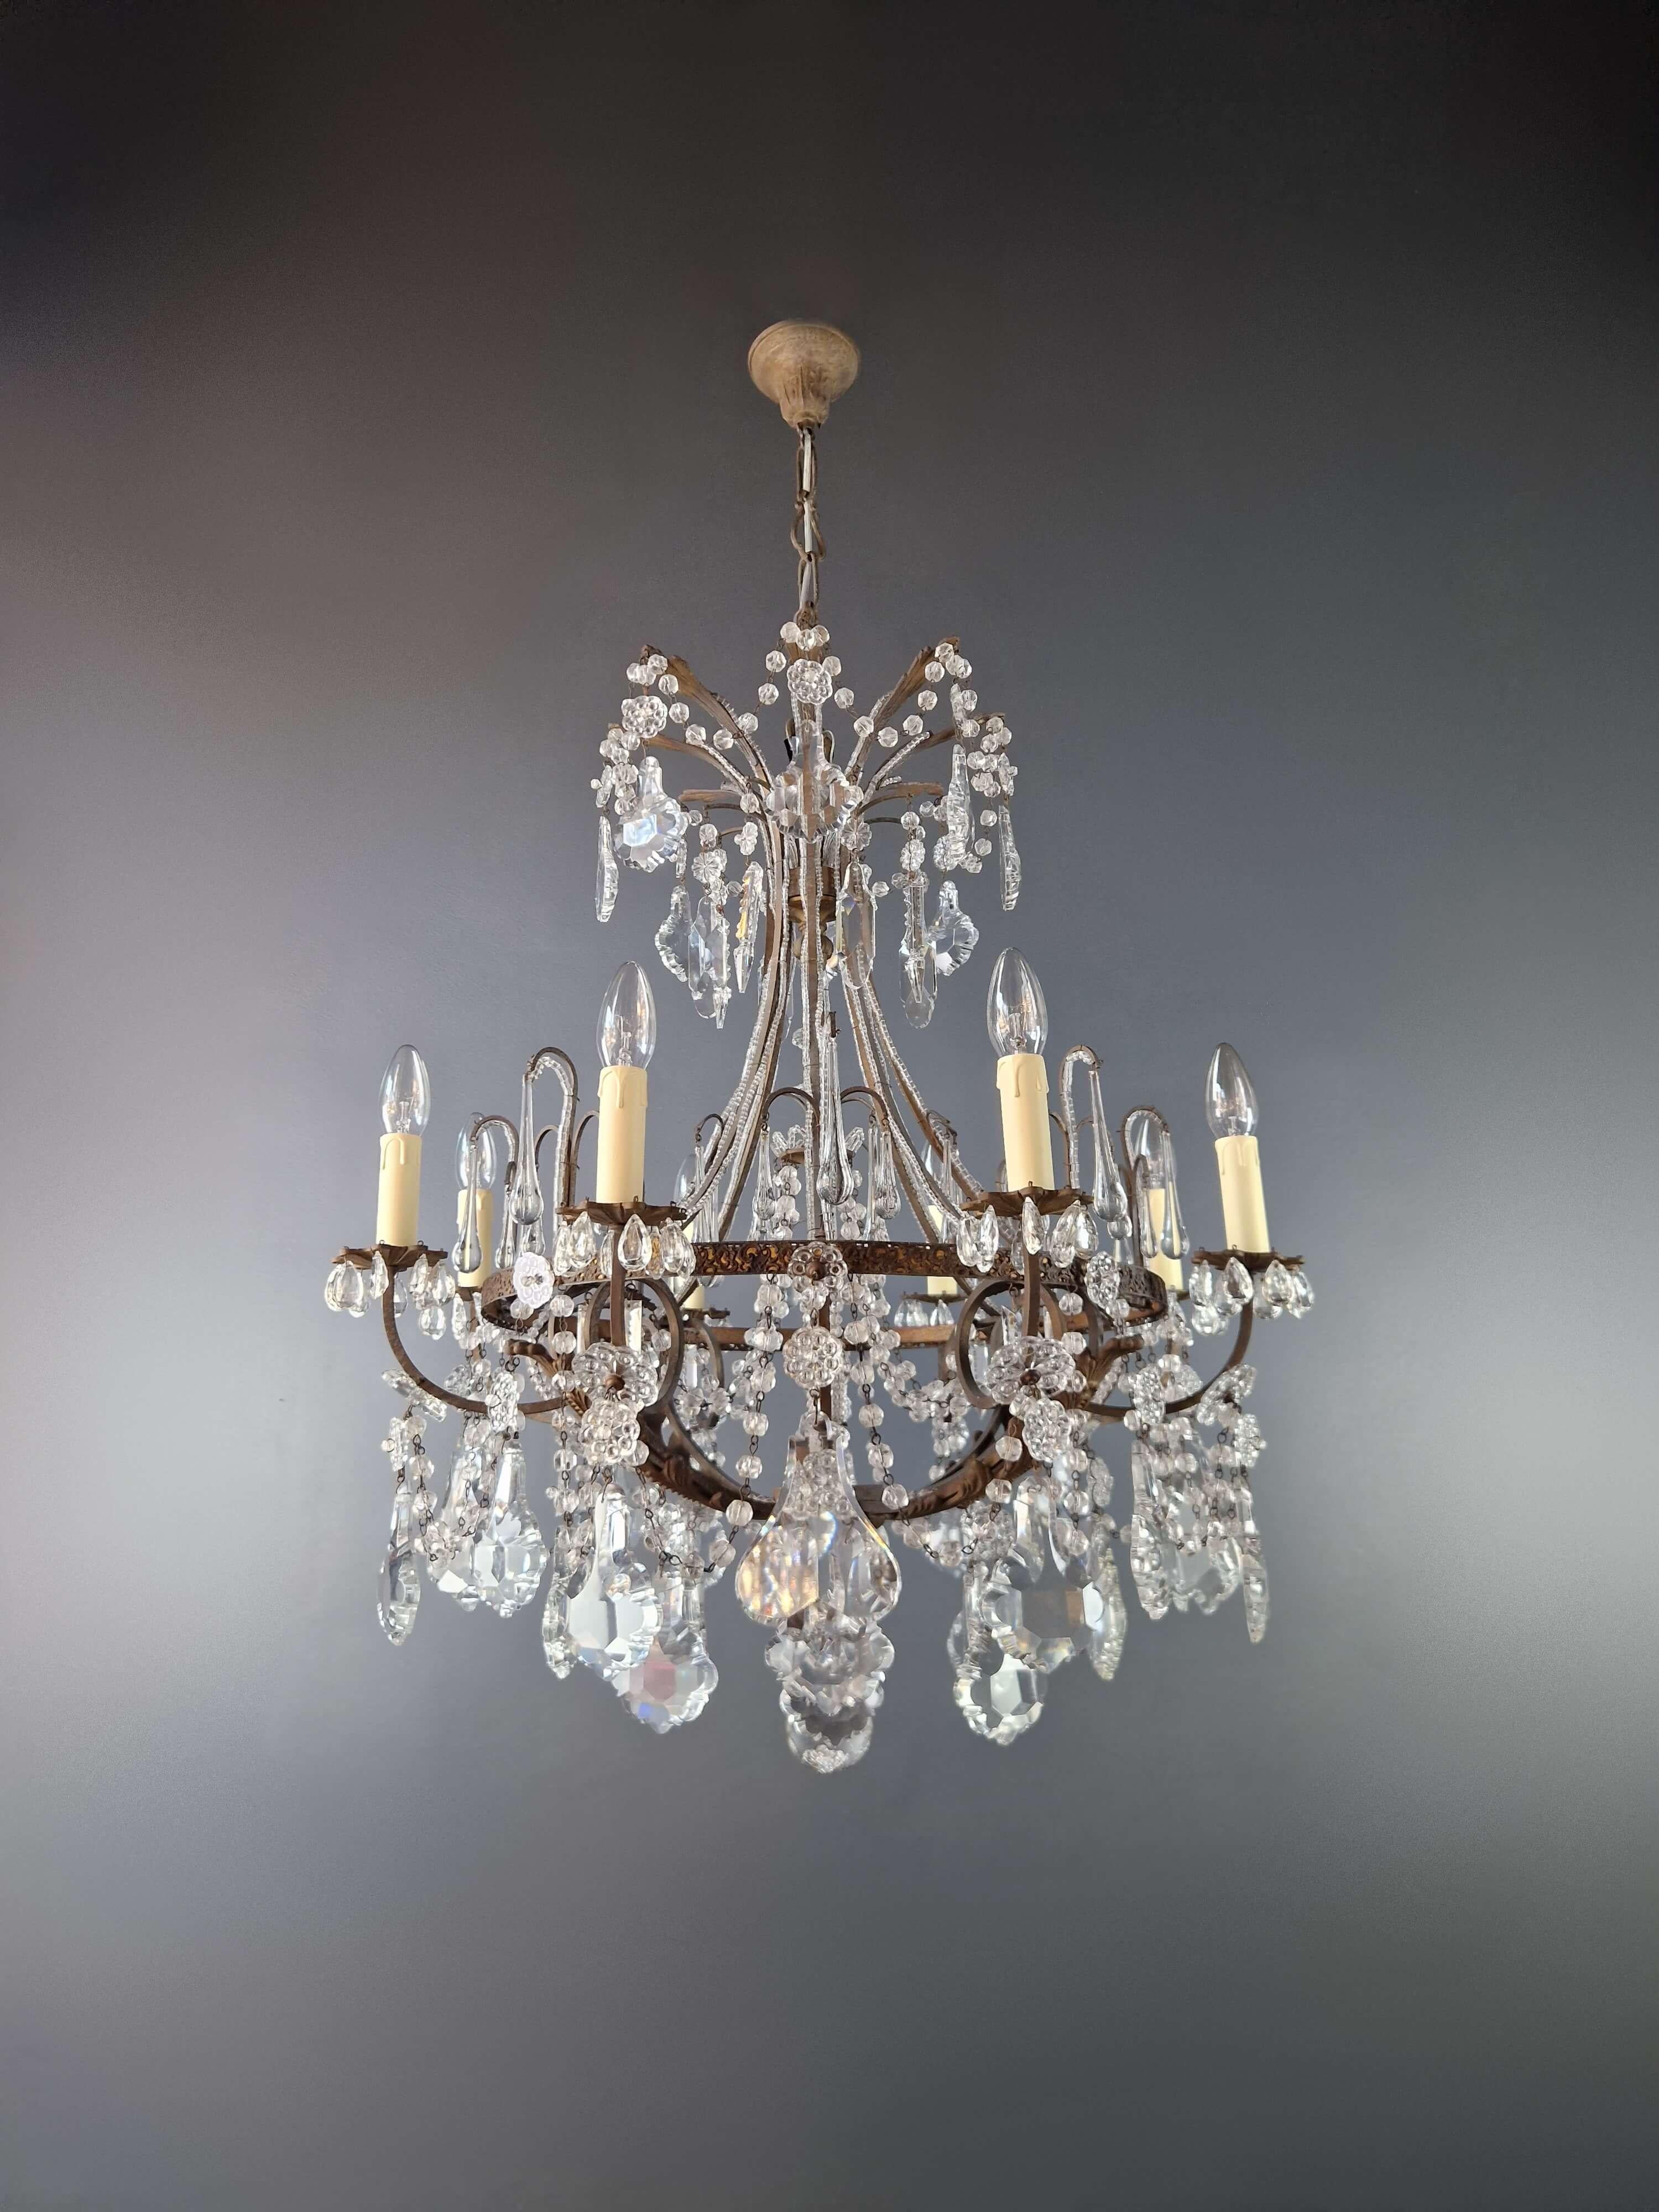 Italian Art Nouveau Brass Chandelier Lustre Ceiling Lamp Rarity Antique For Sale